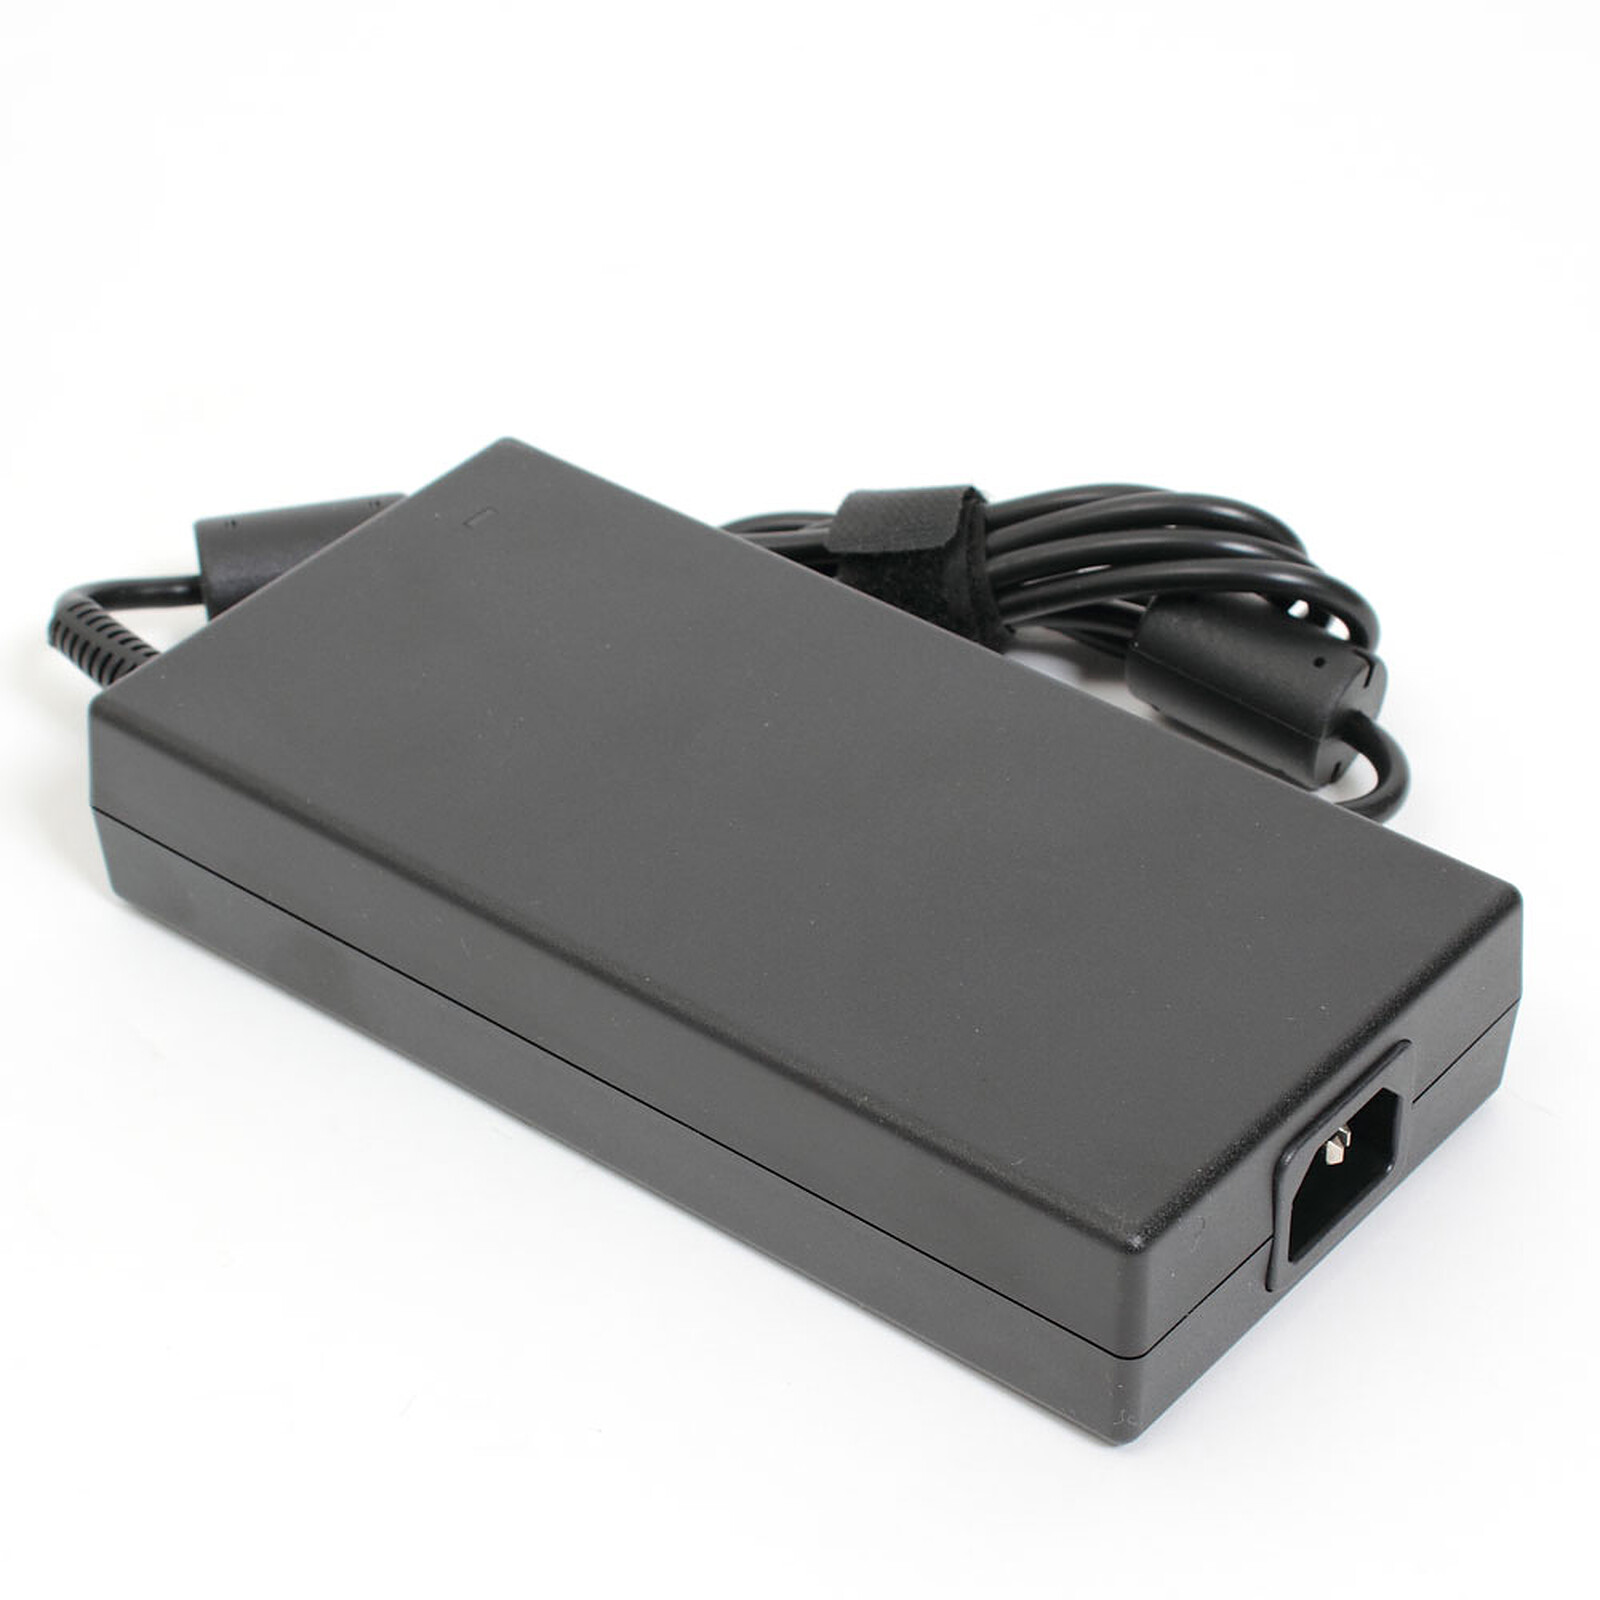 MSI 957-15811P-102 - Chargeur PC portable - Garantie 3 ans LDLC